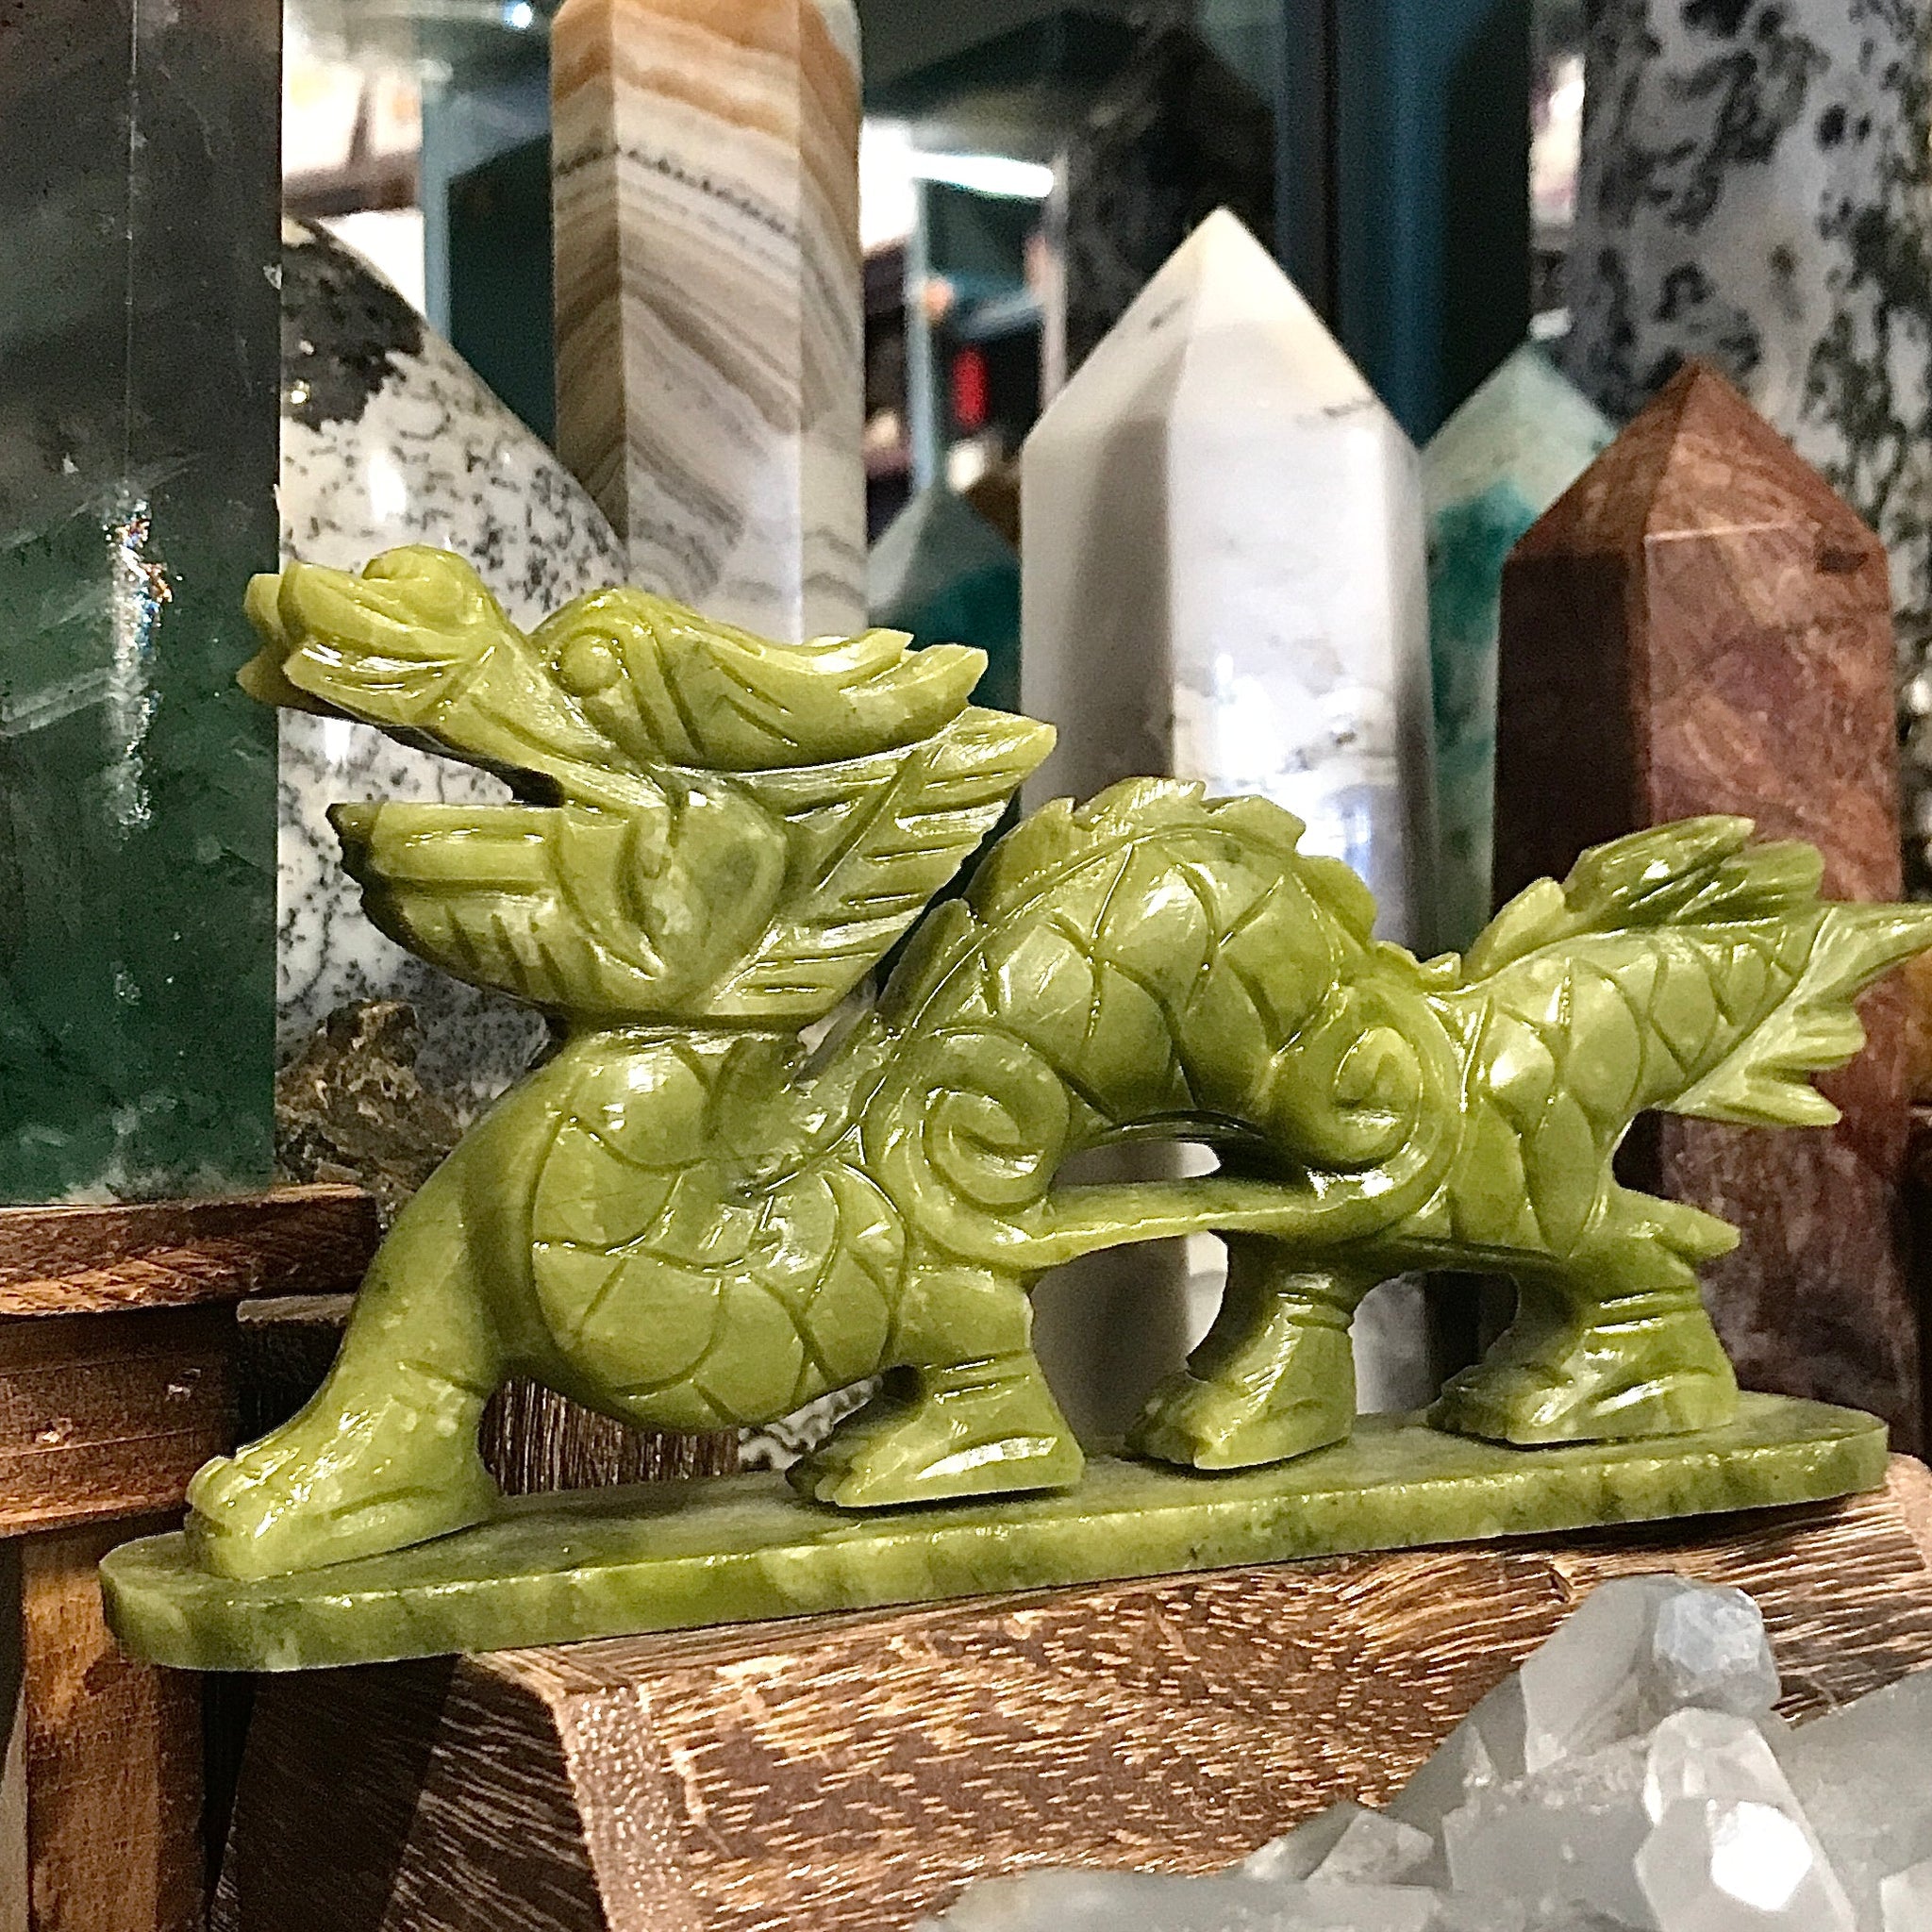 Dragon Carving in Lemon Jade or Green Jade